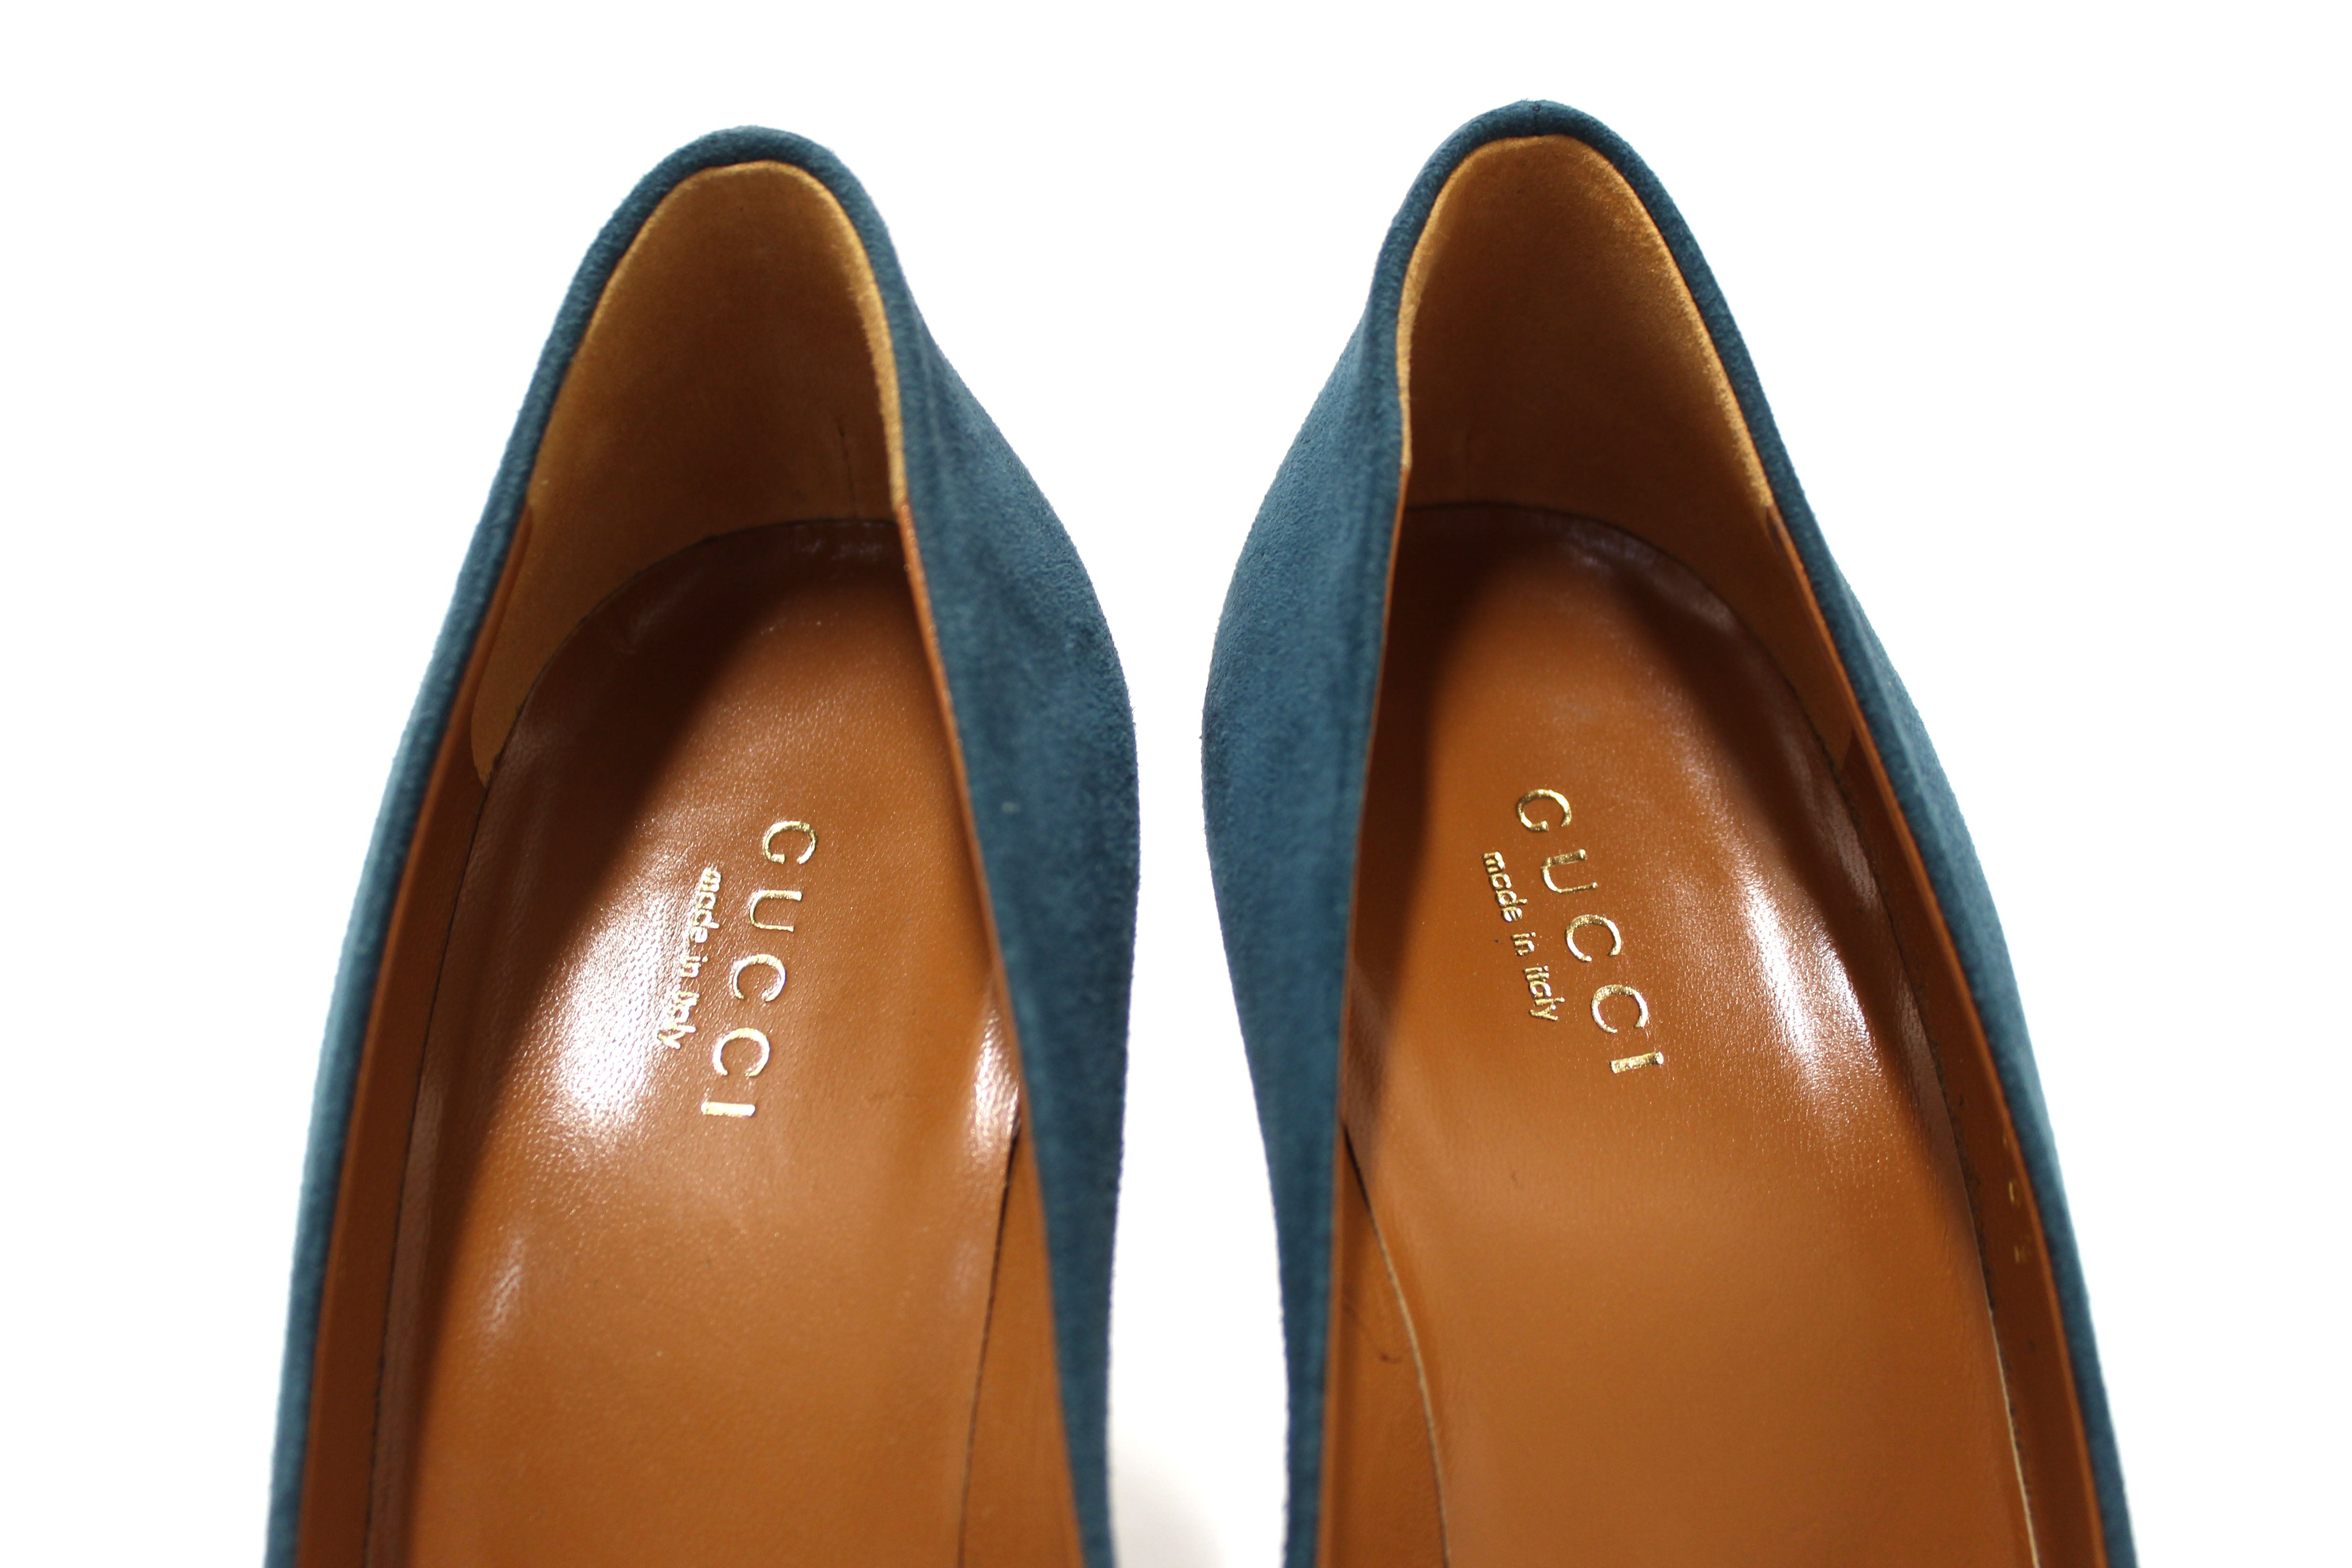 Authentic Gucci Blue Suede Leather Platform Pump Shoes Size 36.5